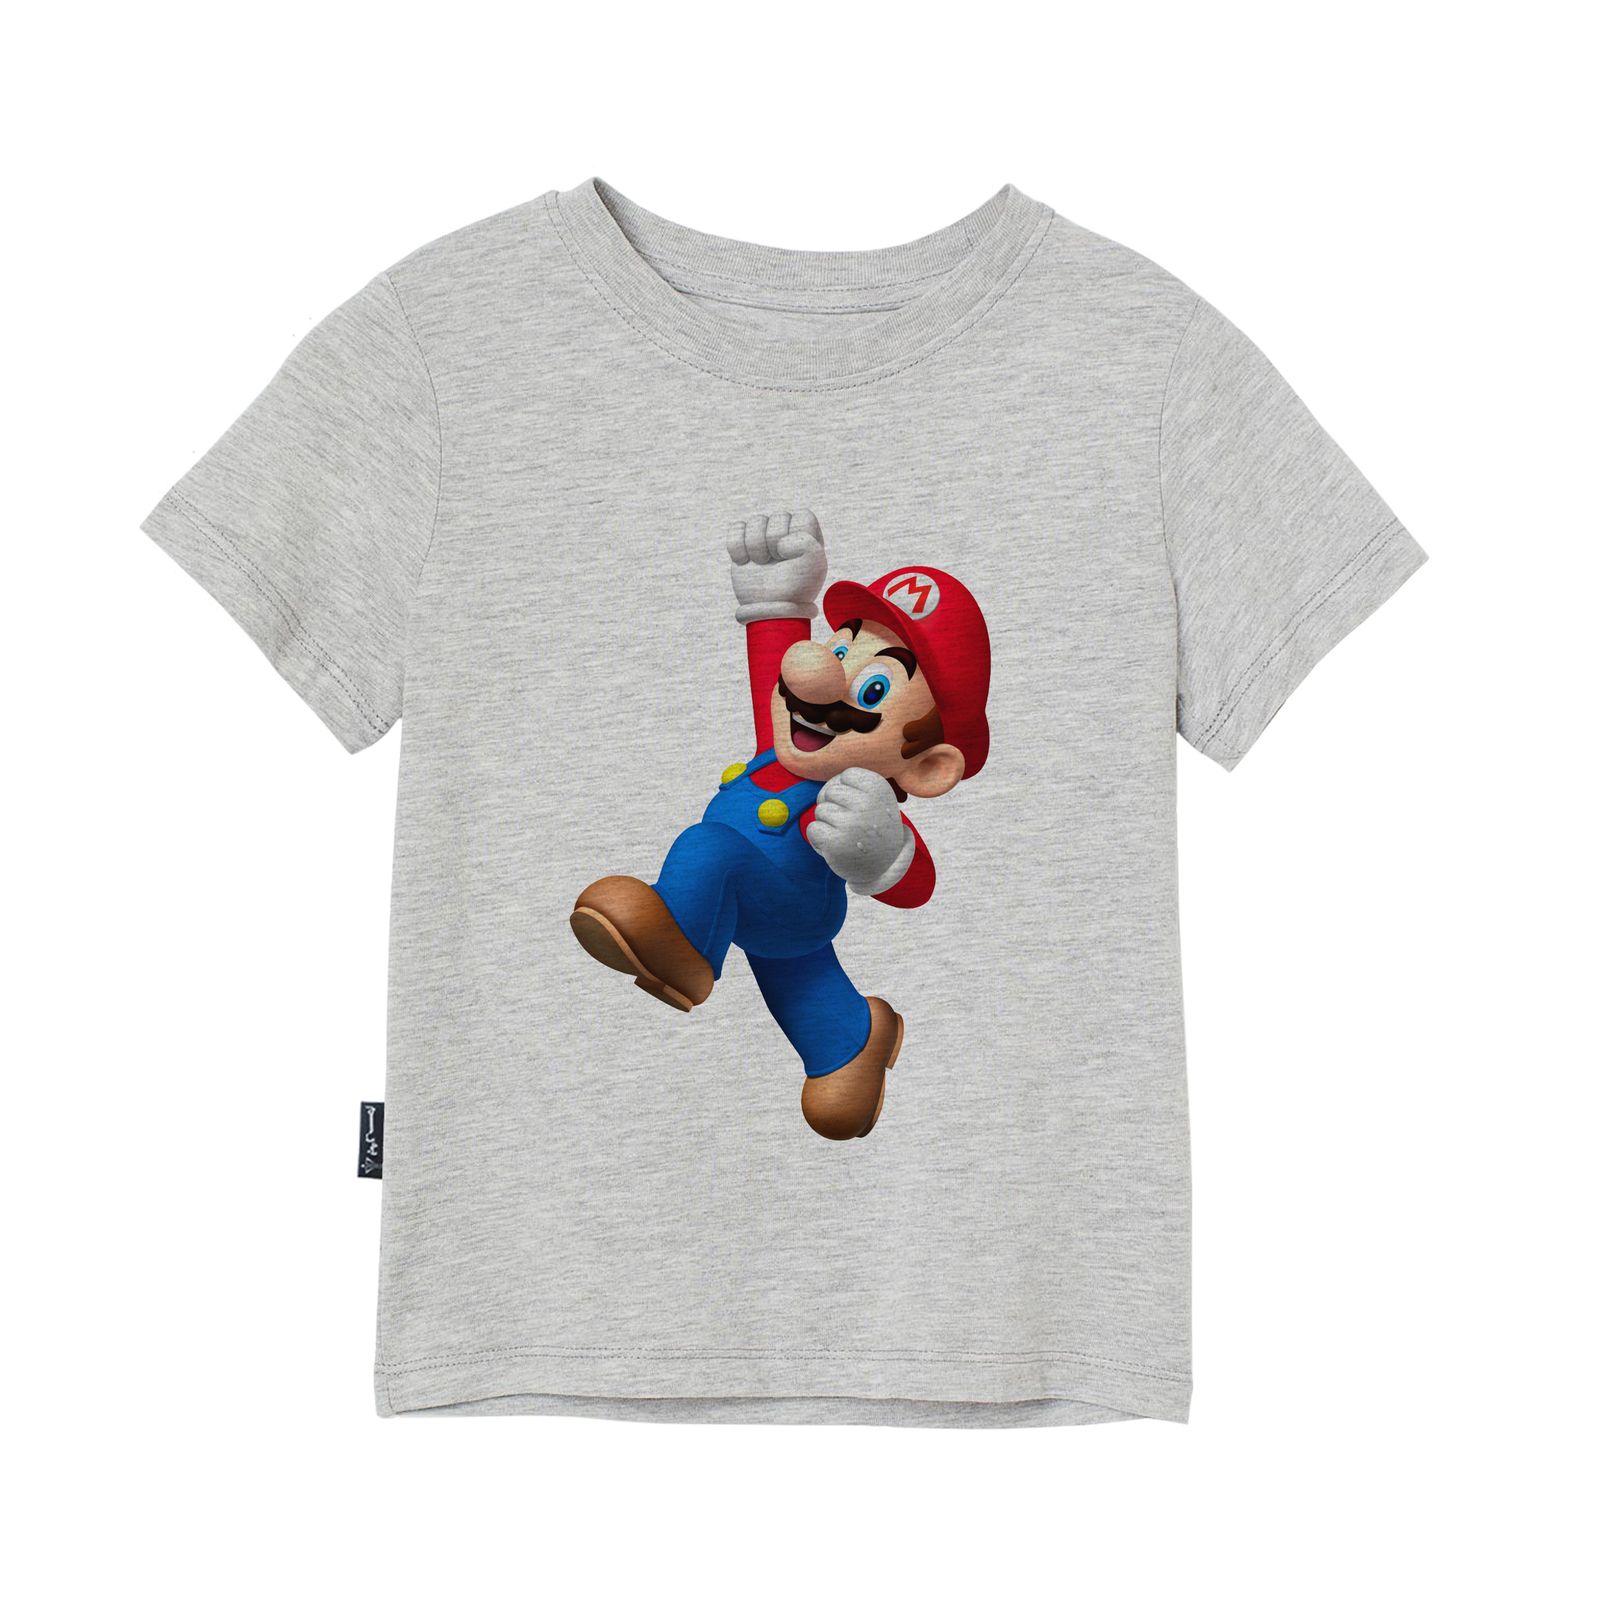 تی شرت آستین کوتاه بچگانه به رسم مدل سوپر ماریو کد 1133